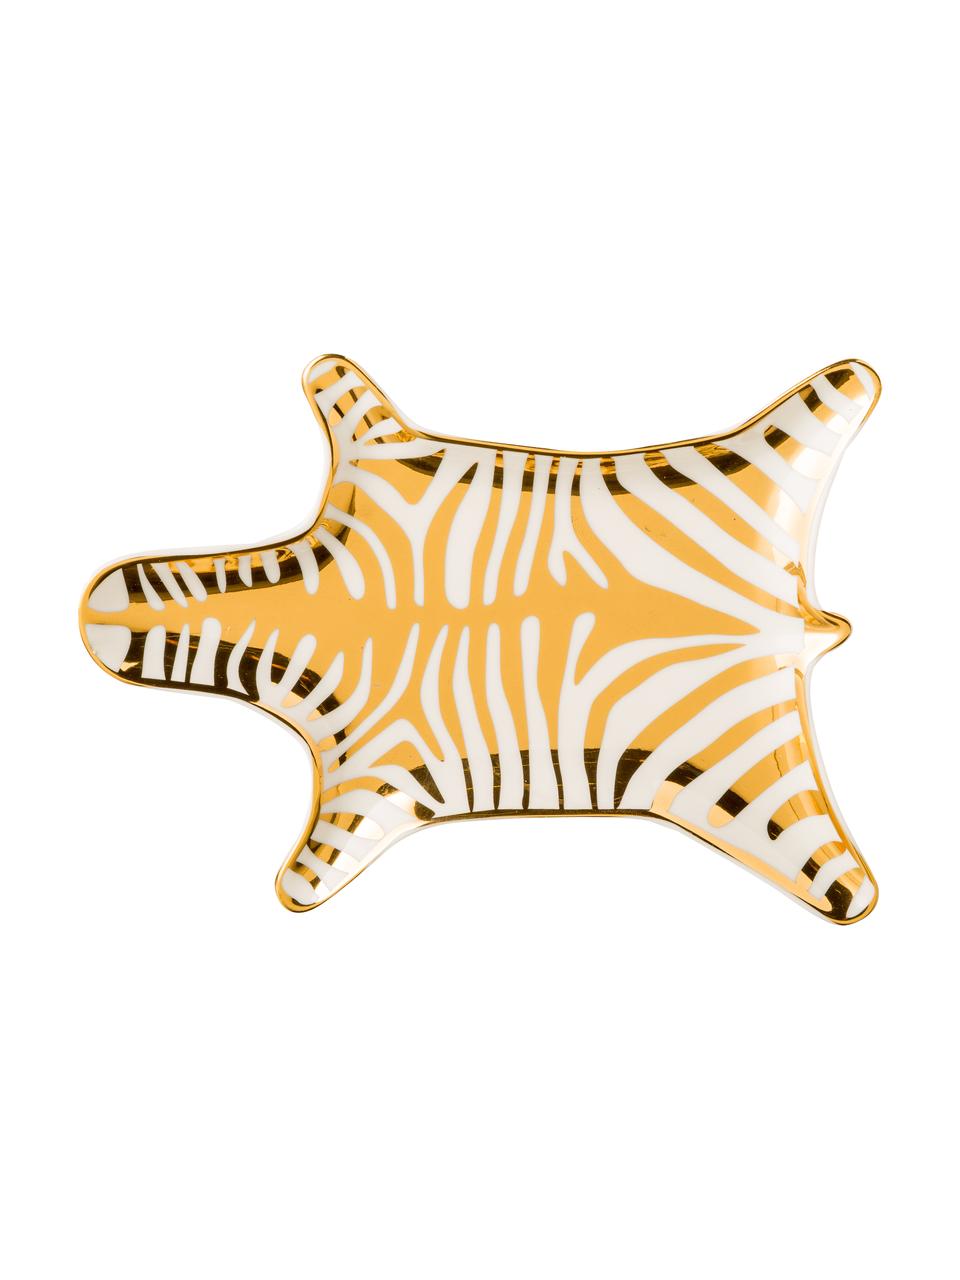 Miska dekoracyjna Zebra, Porcelana, Złoty, biały, 15 cm